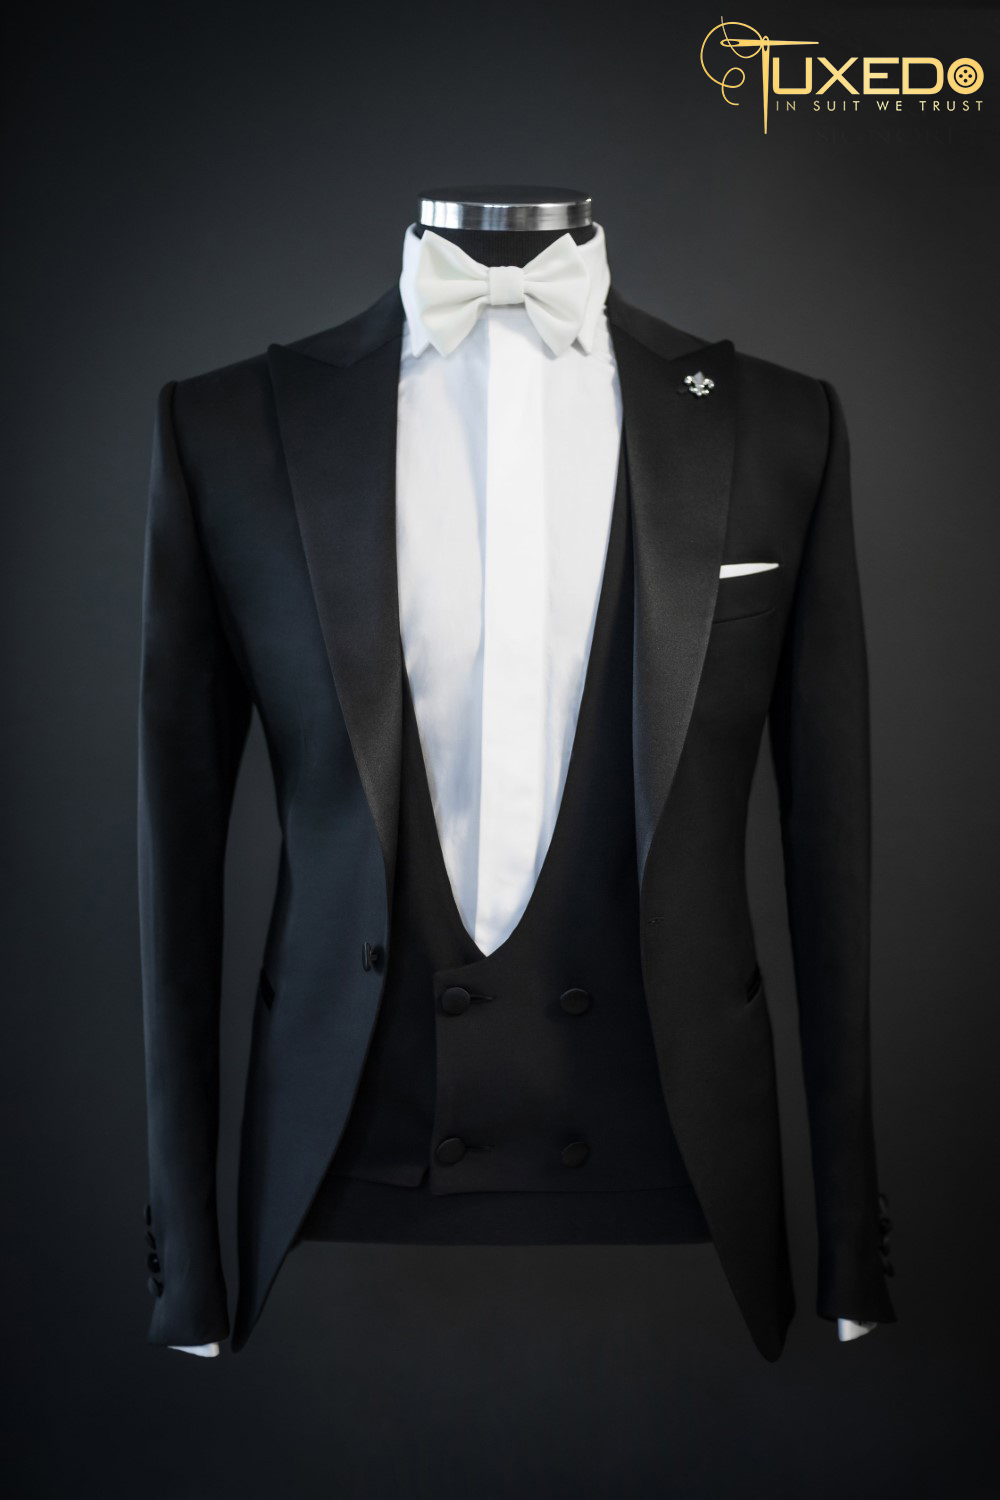 Vì sao nên chọn Tuxedo thay cho Suit